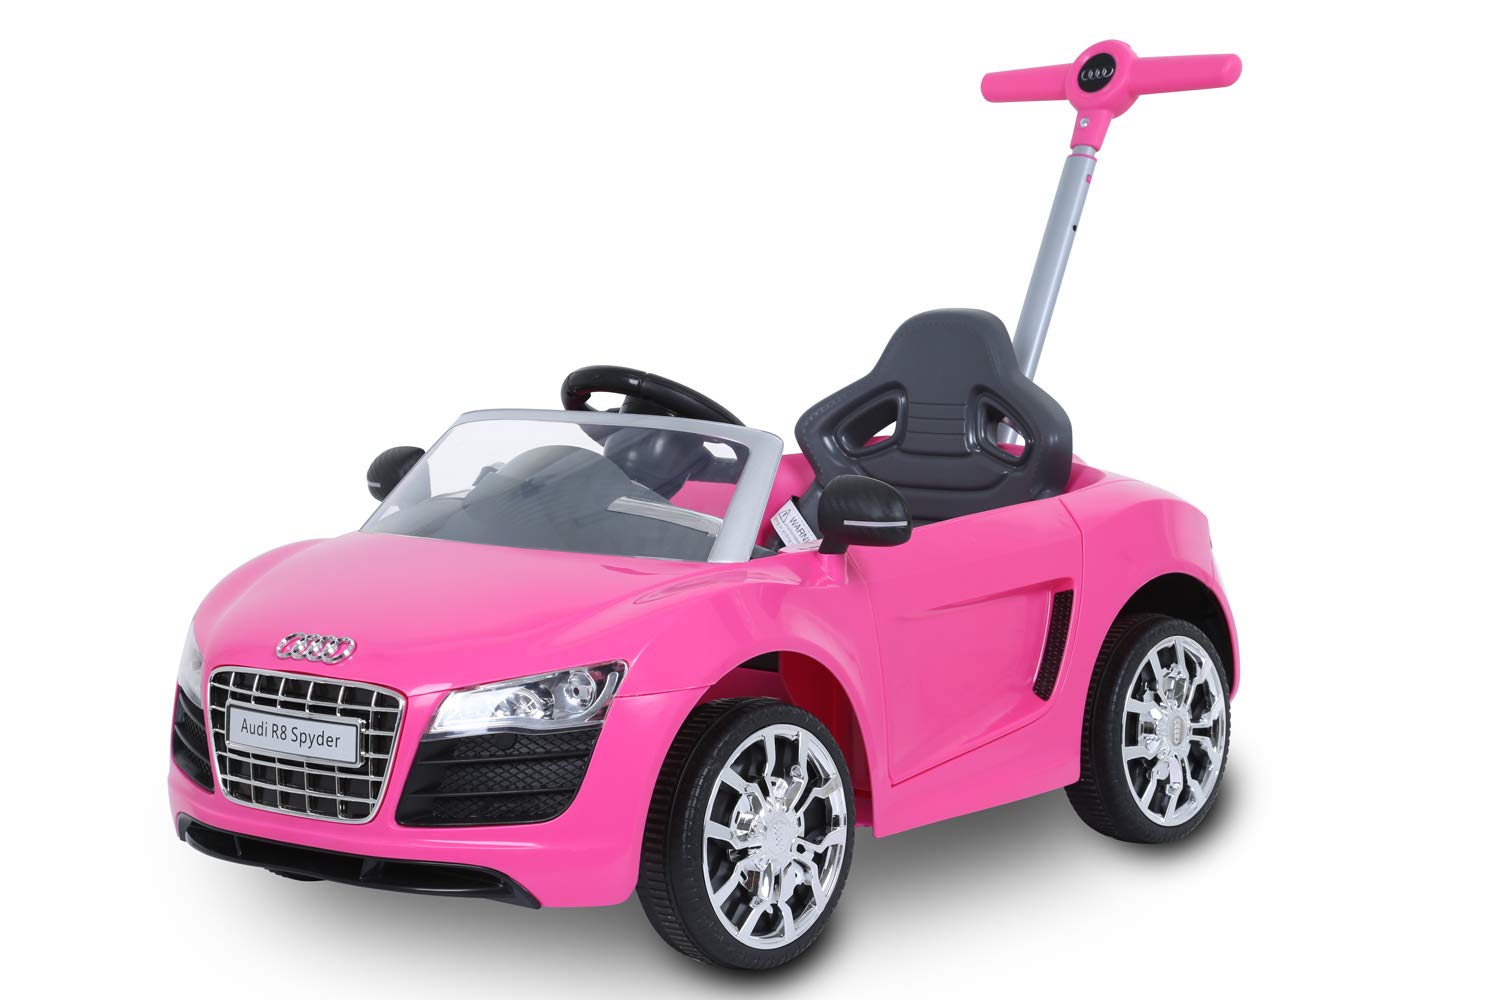 Rollplay Push Car mit ausziehbarer Fußstütze, Für Kinder ab 1 Jahr, Bis max. 20 kg, Audi R8 Spyder, Pink, 113.5 x 47.5 x 59 cm 44393